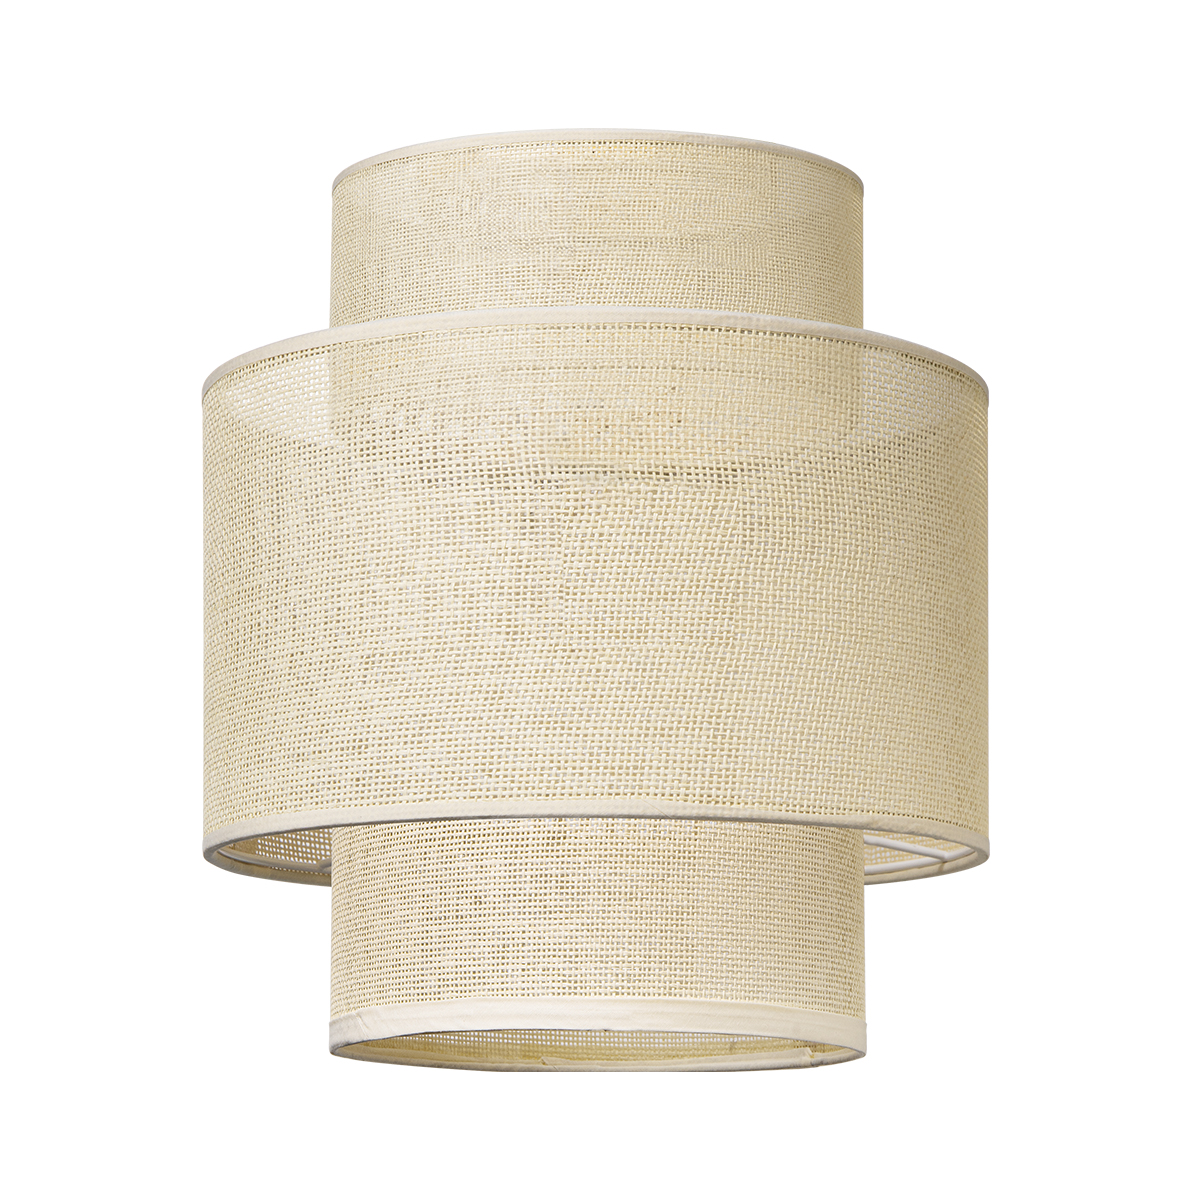 Tangla lighting - TLS7013-01NT - Lampshade - linen - natural - chimney - diameter 30cm - E27